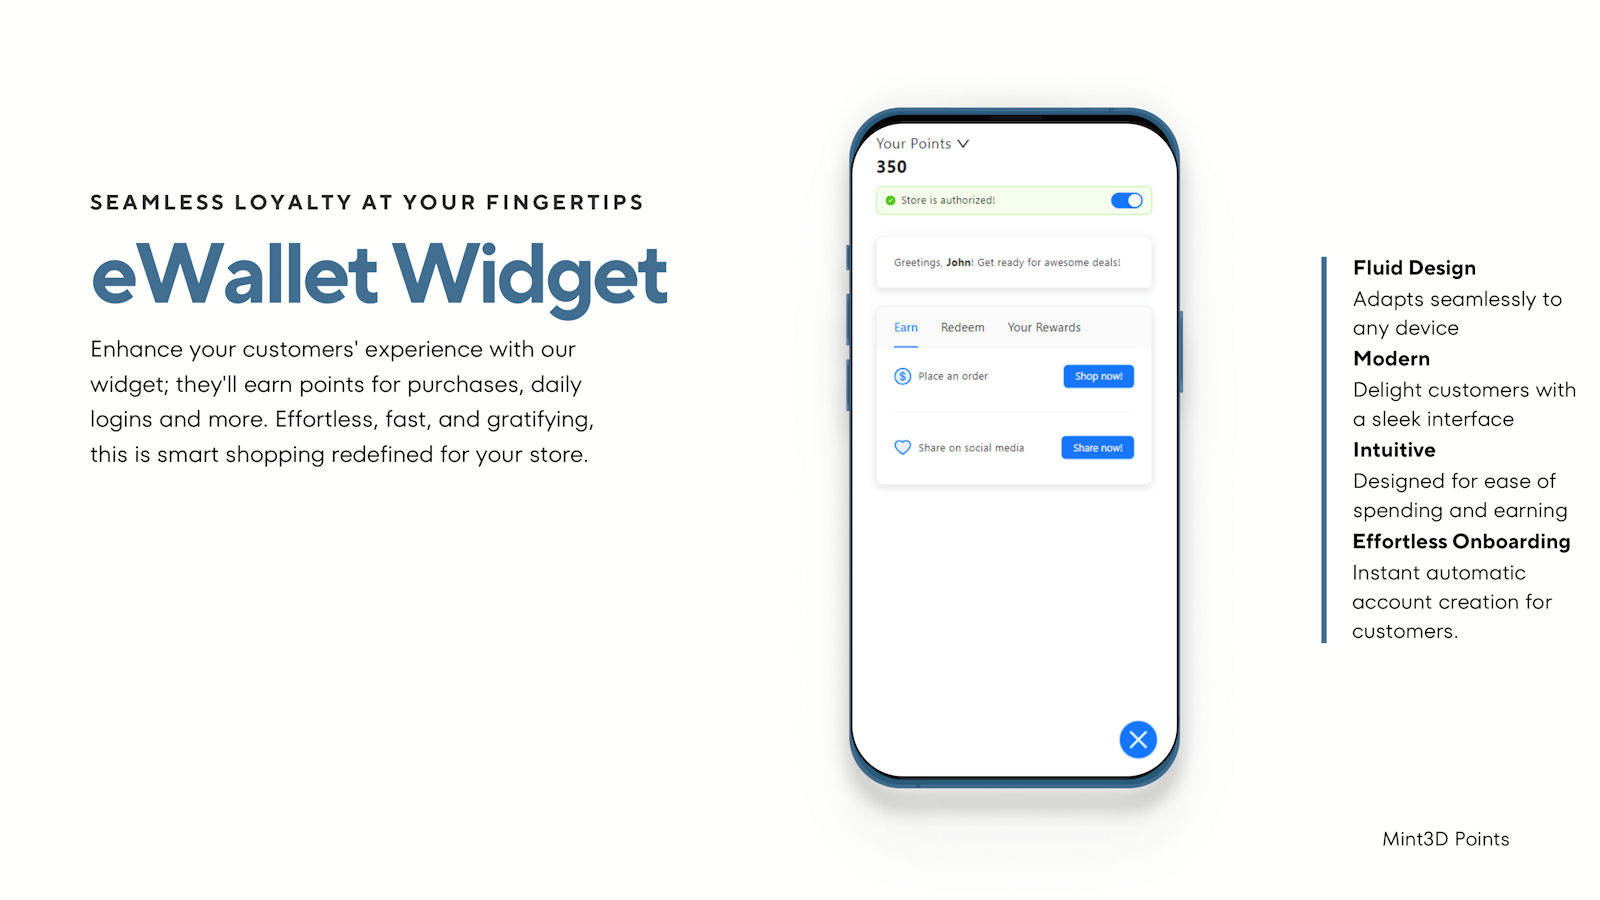 widget moderno, rápido, receptivo y simple